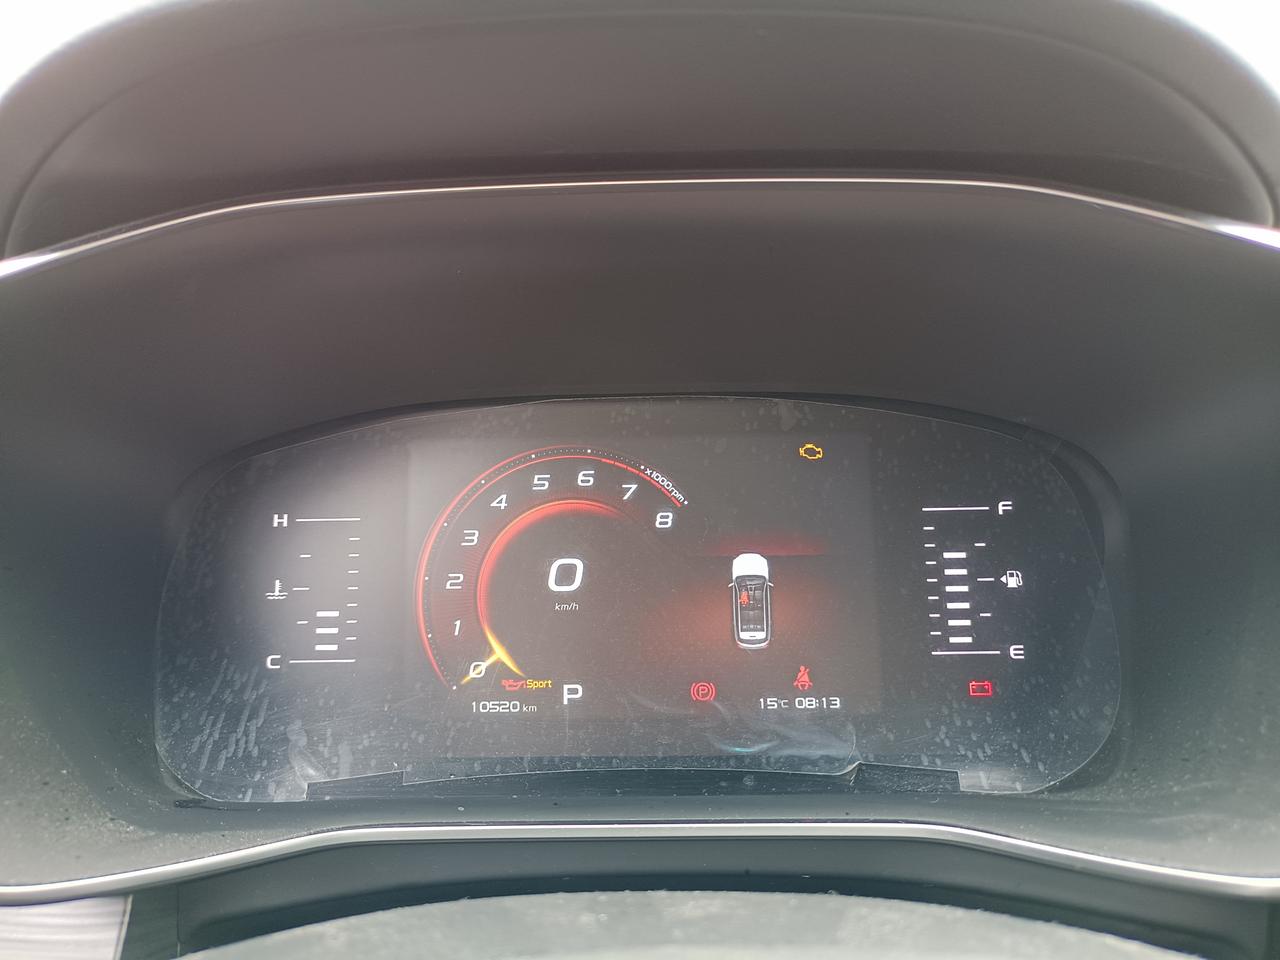 吉利博越 2021年 3月份买的车  1.8T智慧版  开了一万多公里  后雨刮器生锈 仪表显示平均油耗11个